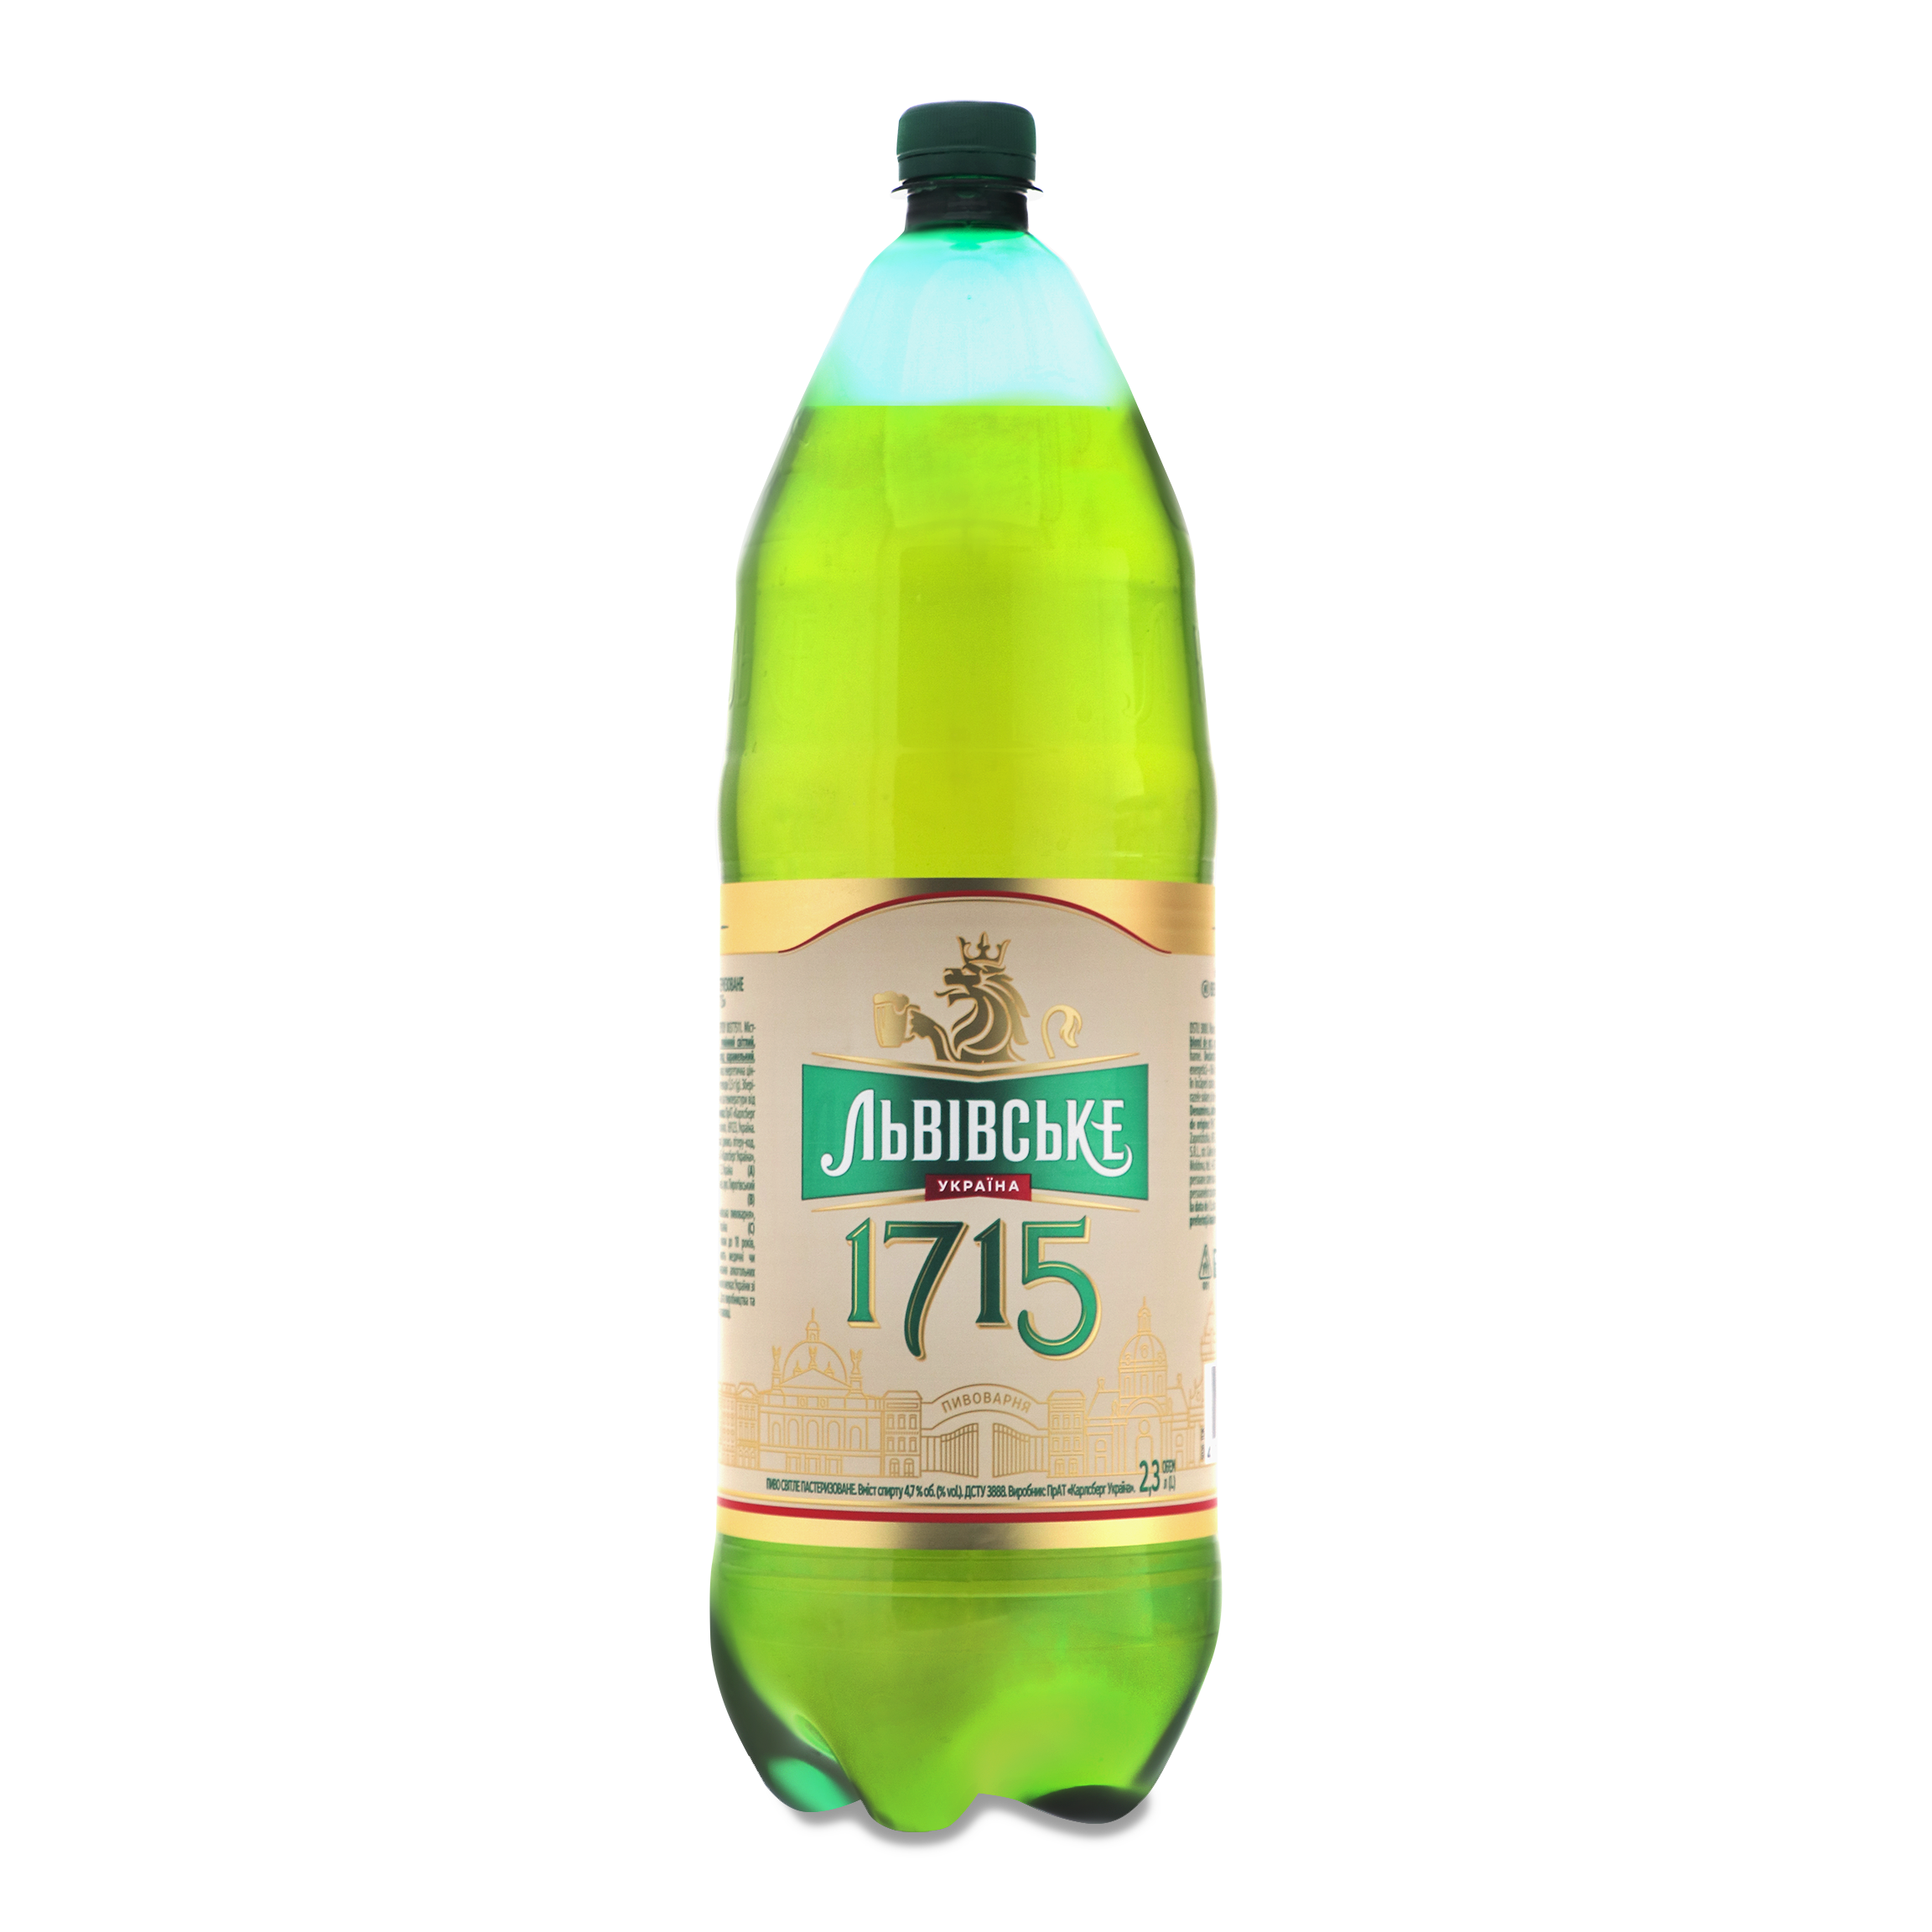 Пиво Львовское 1715 светлое 4,7% 2,3л